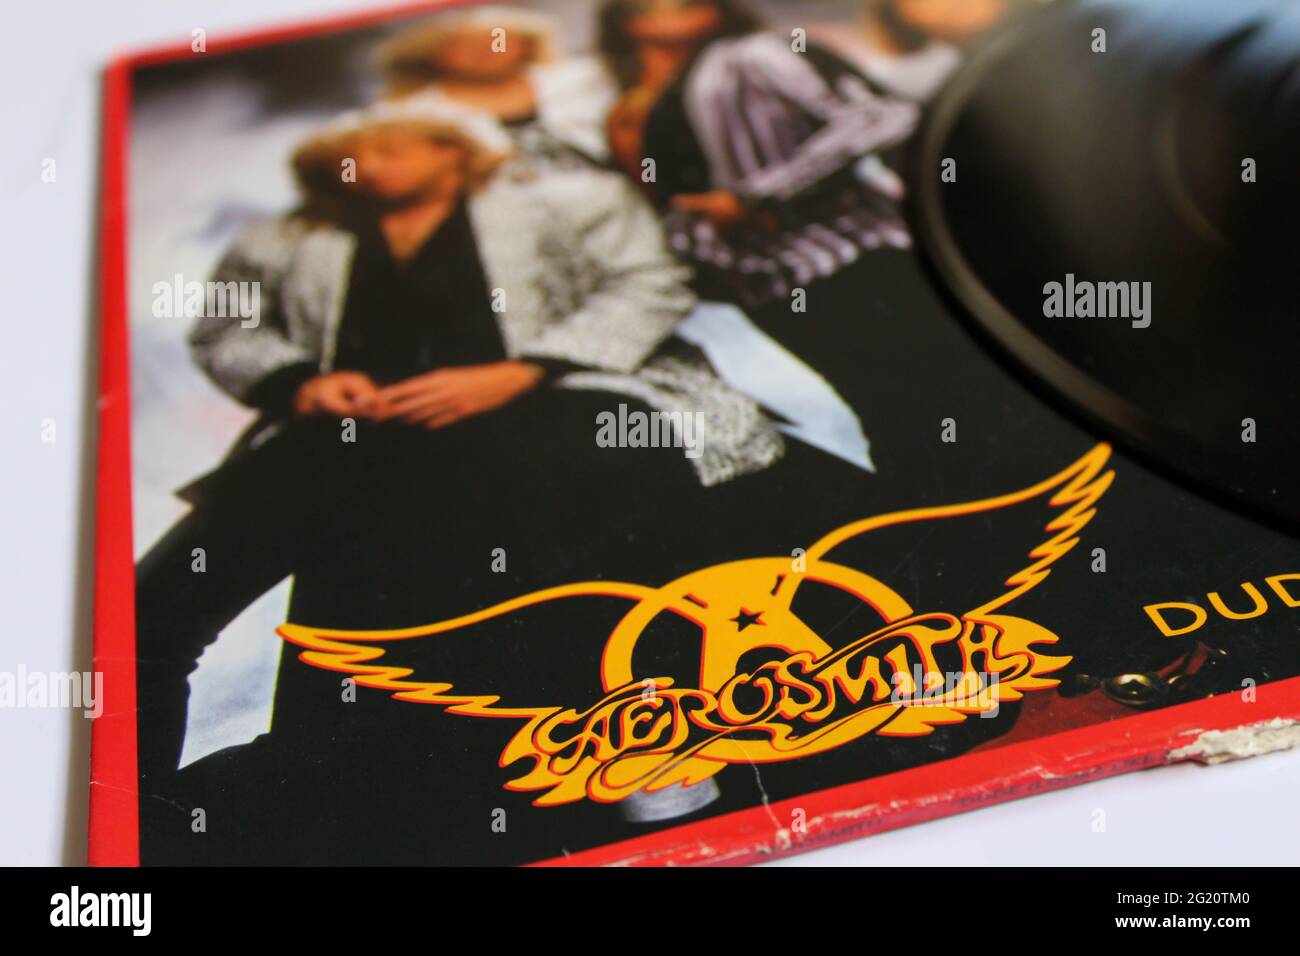 Gruppo rock classico, Aerosmith, album musicale su disco LP con dischi in vinile. Il titolo Dude assomiglia a una copertina di album singola di signora Foto Stock